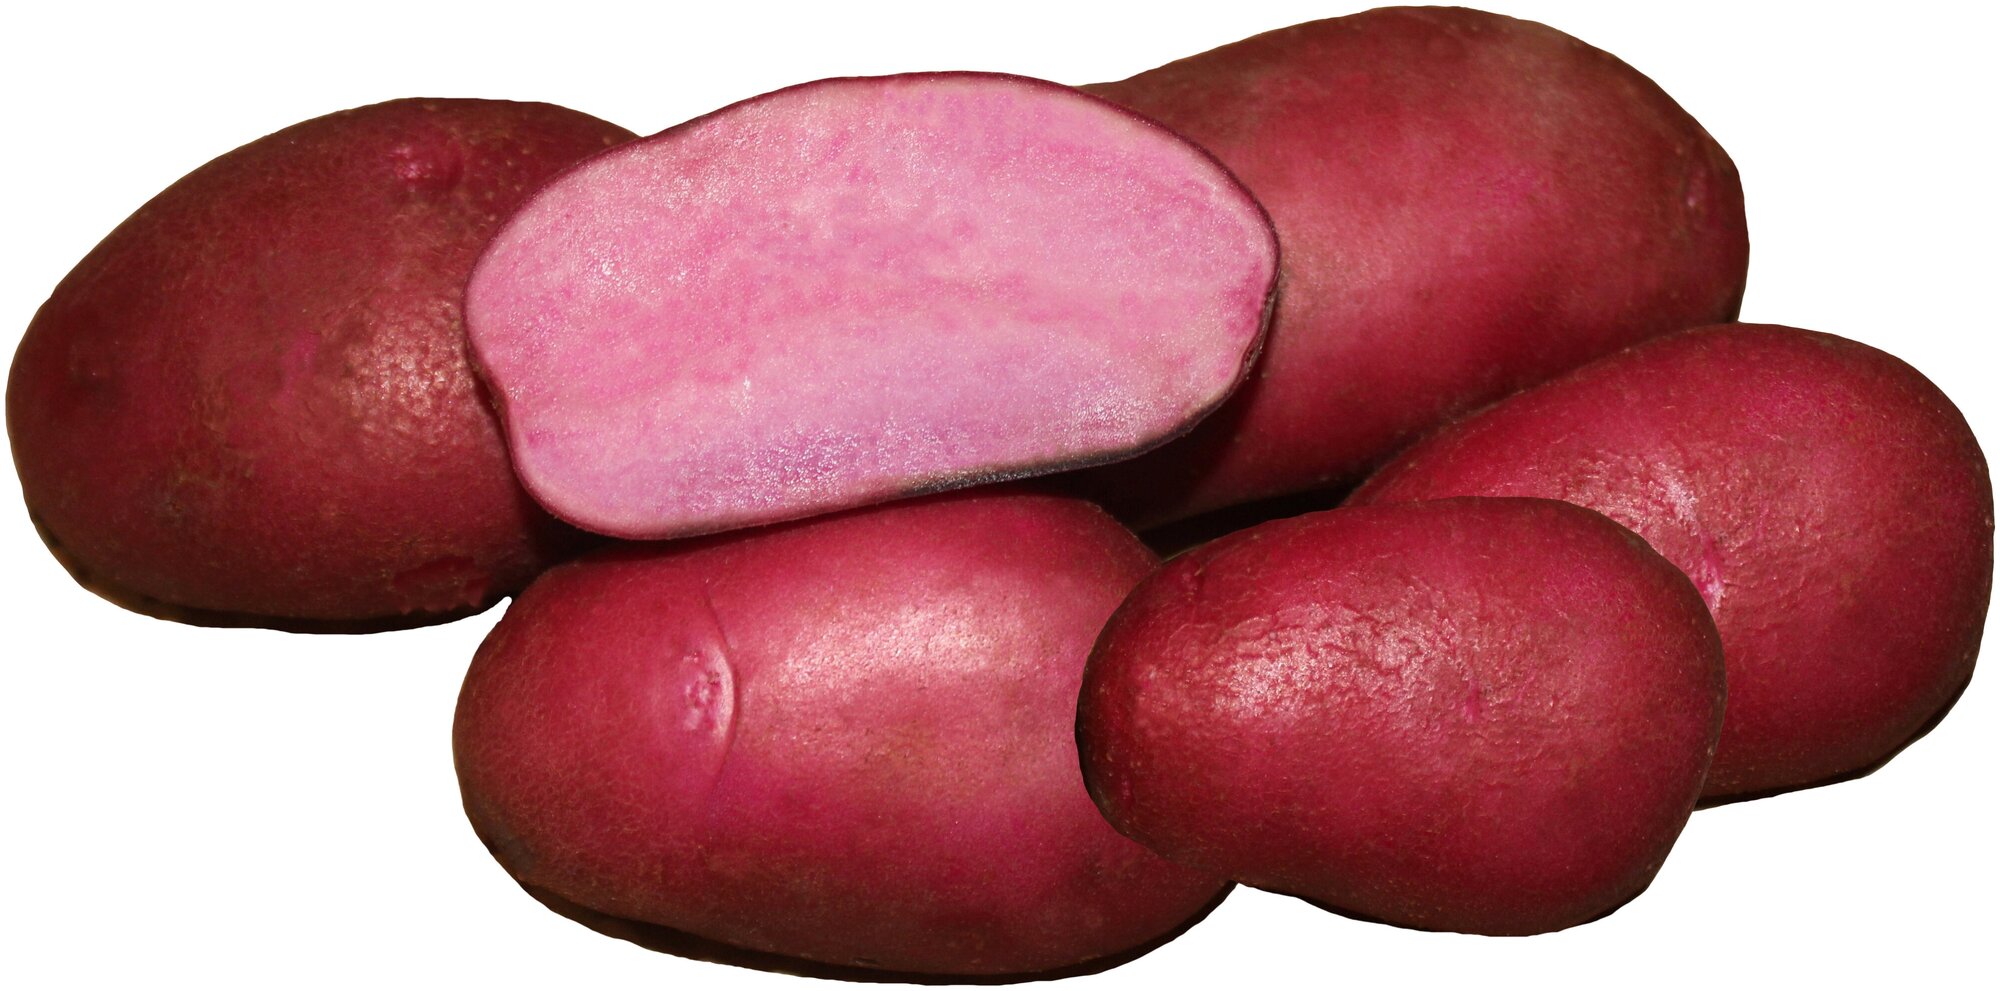 Картофель семенной сорт Сюрприз (суперэлита) (4 кг)